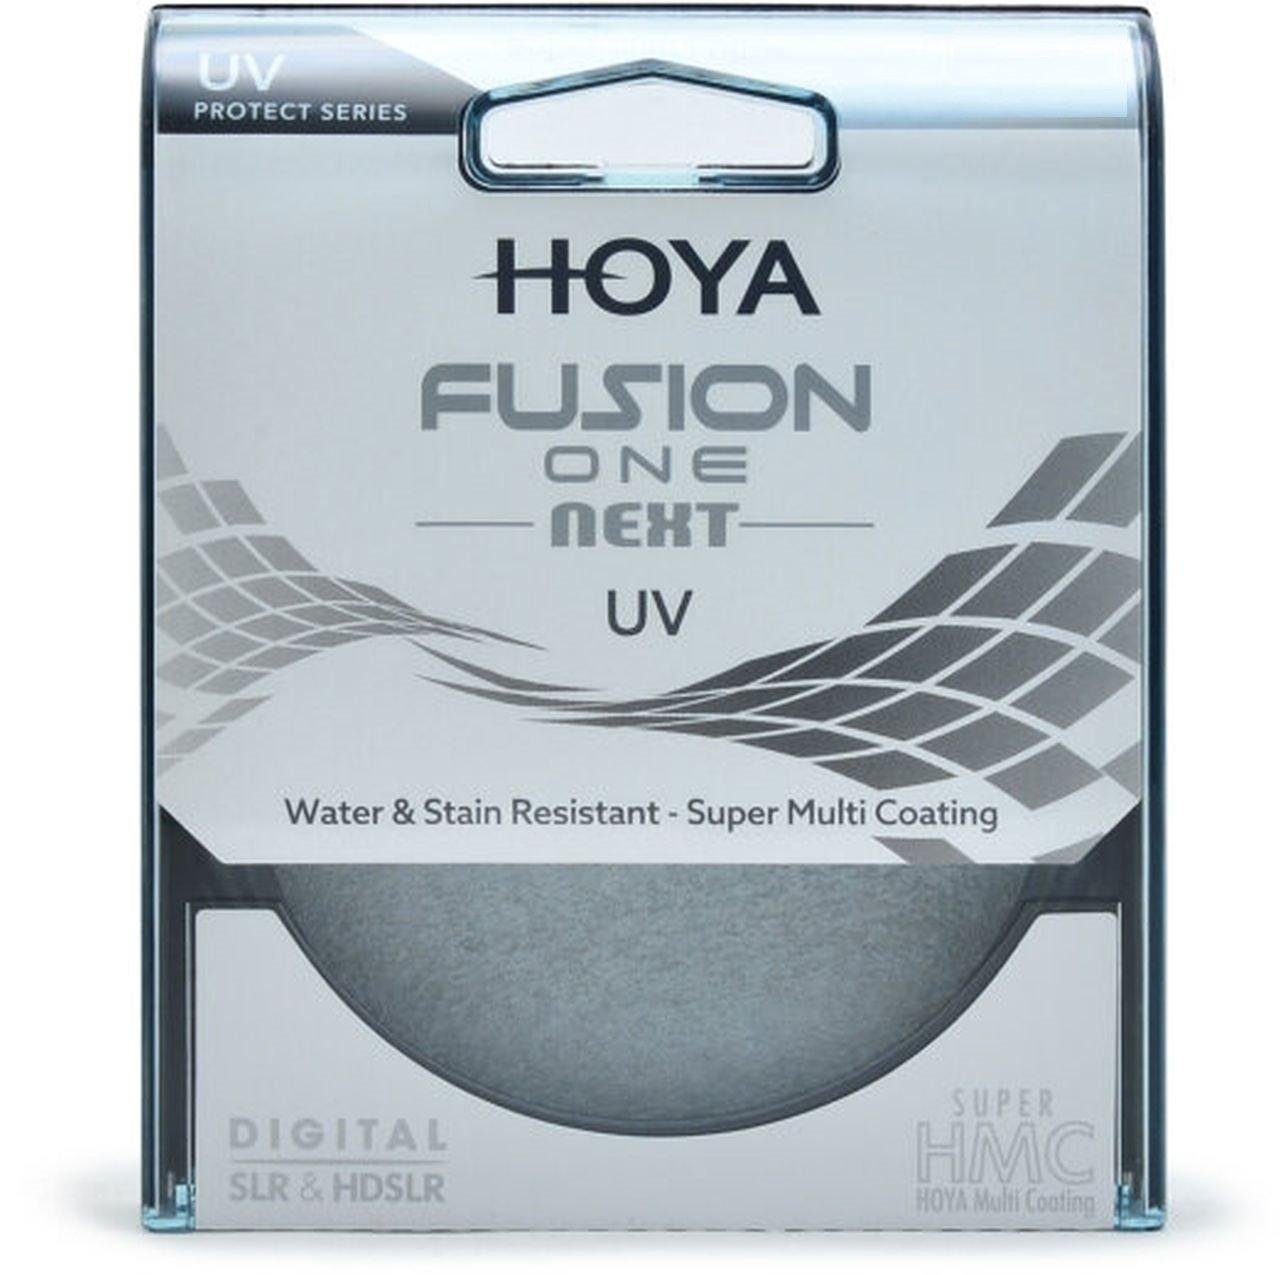 Next 49mm ONE Hoya UV-Filter Fusion Objektivzubehör